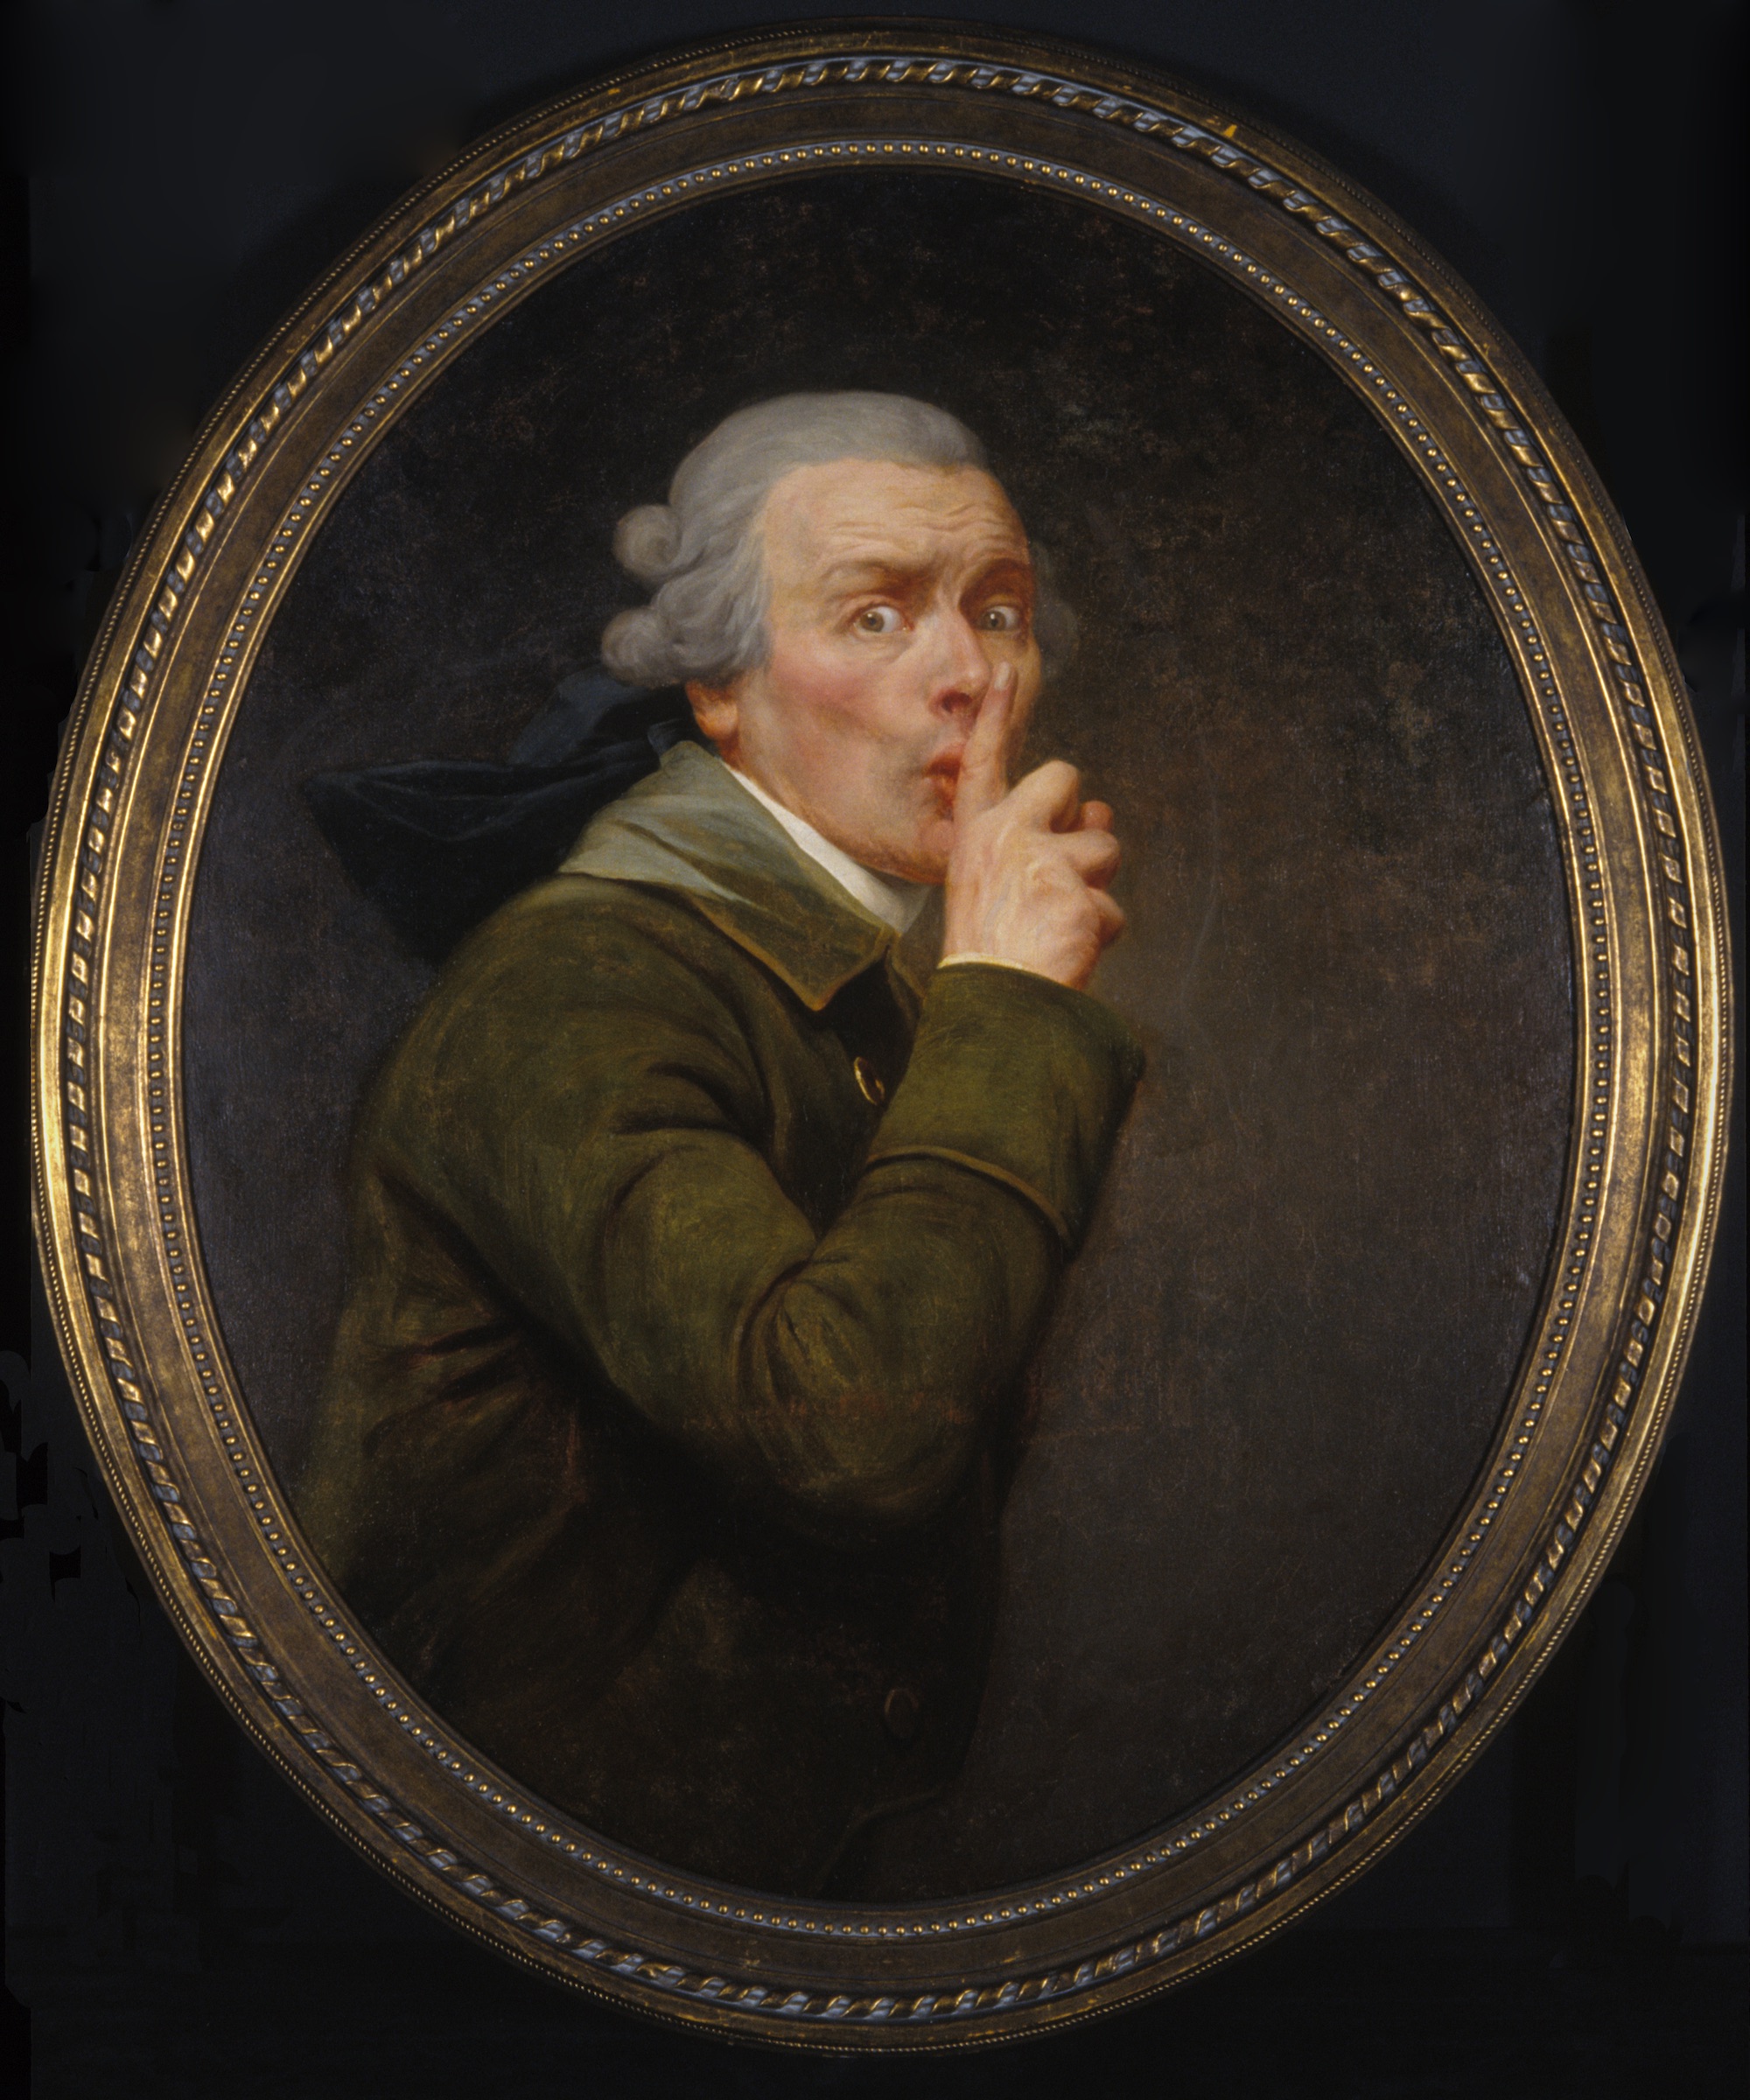 Le Discret by Joseph Ducreux - circa 1791 - 91.6 x 79.9 cm Museo de Arte Spencer